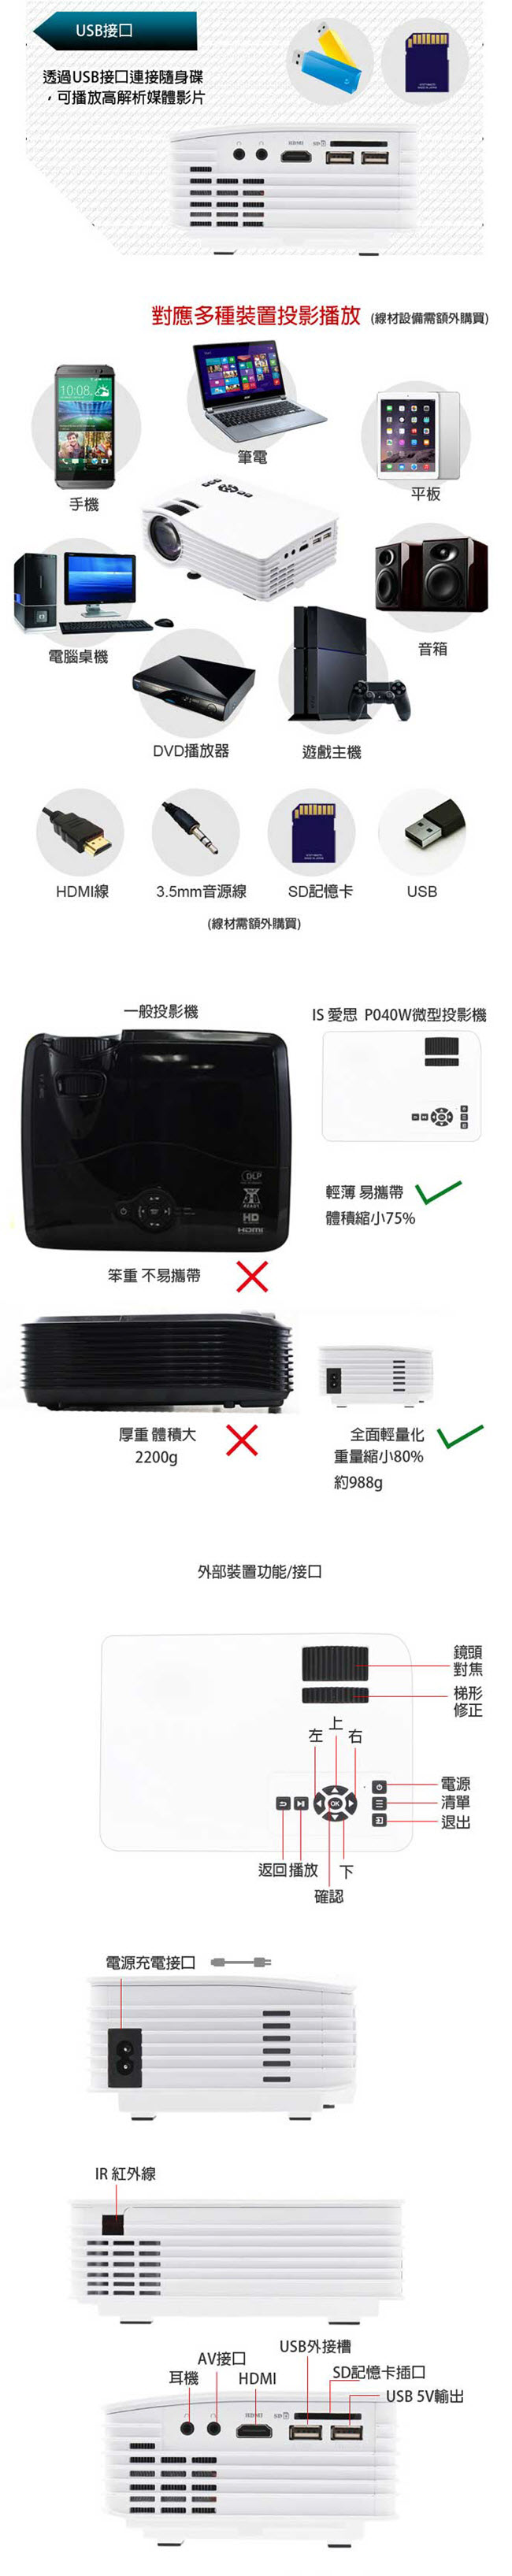 福利品-IS愛思 P040W 140吋WiFi無線同屏鏡射微型投影機